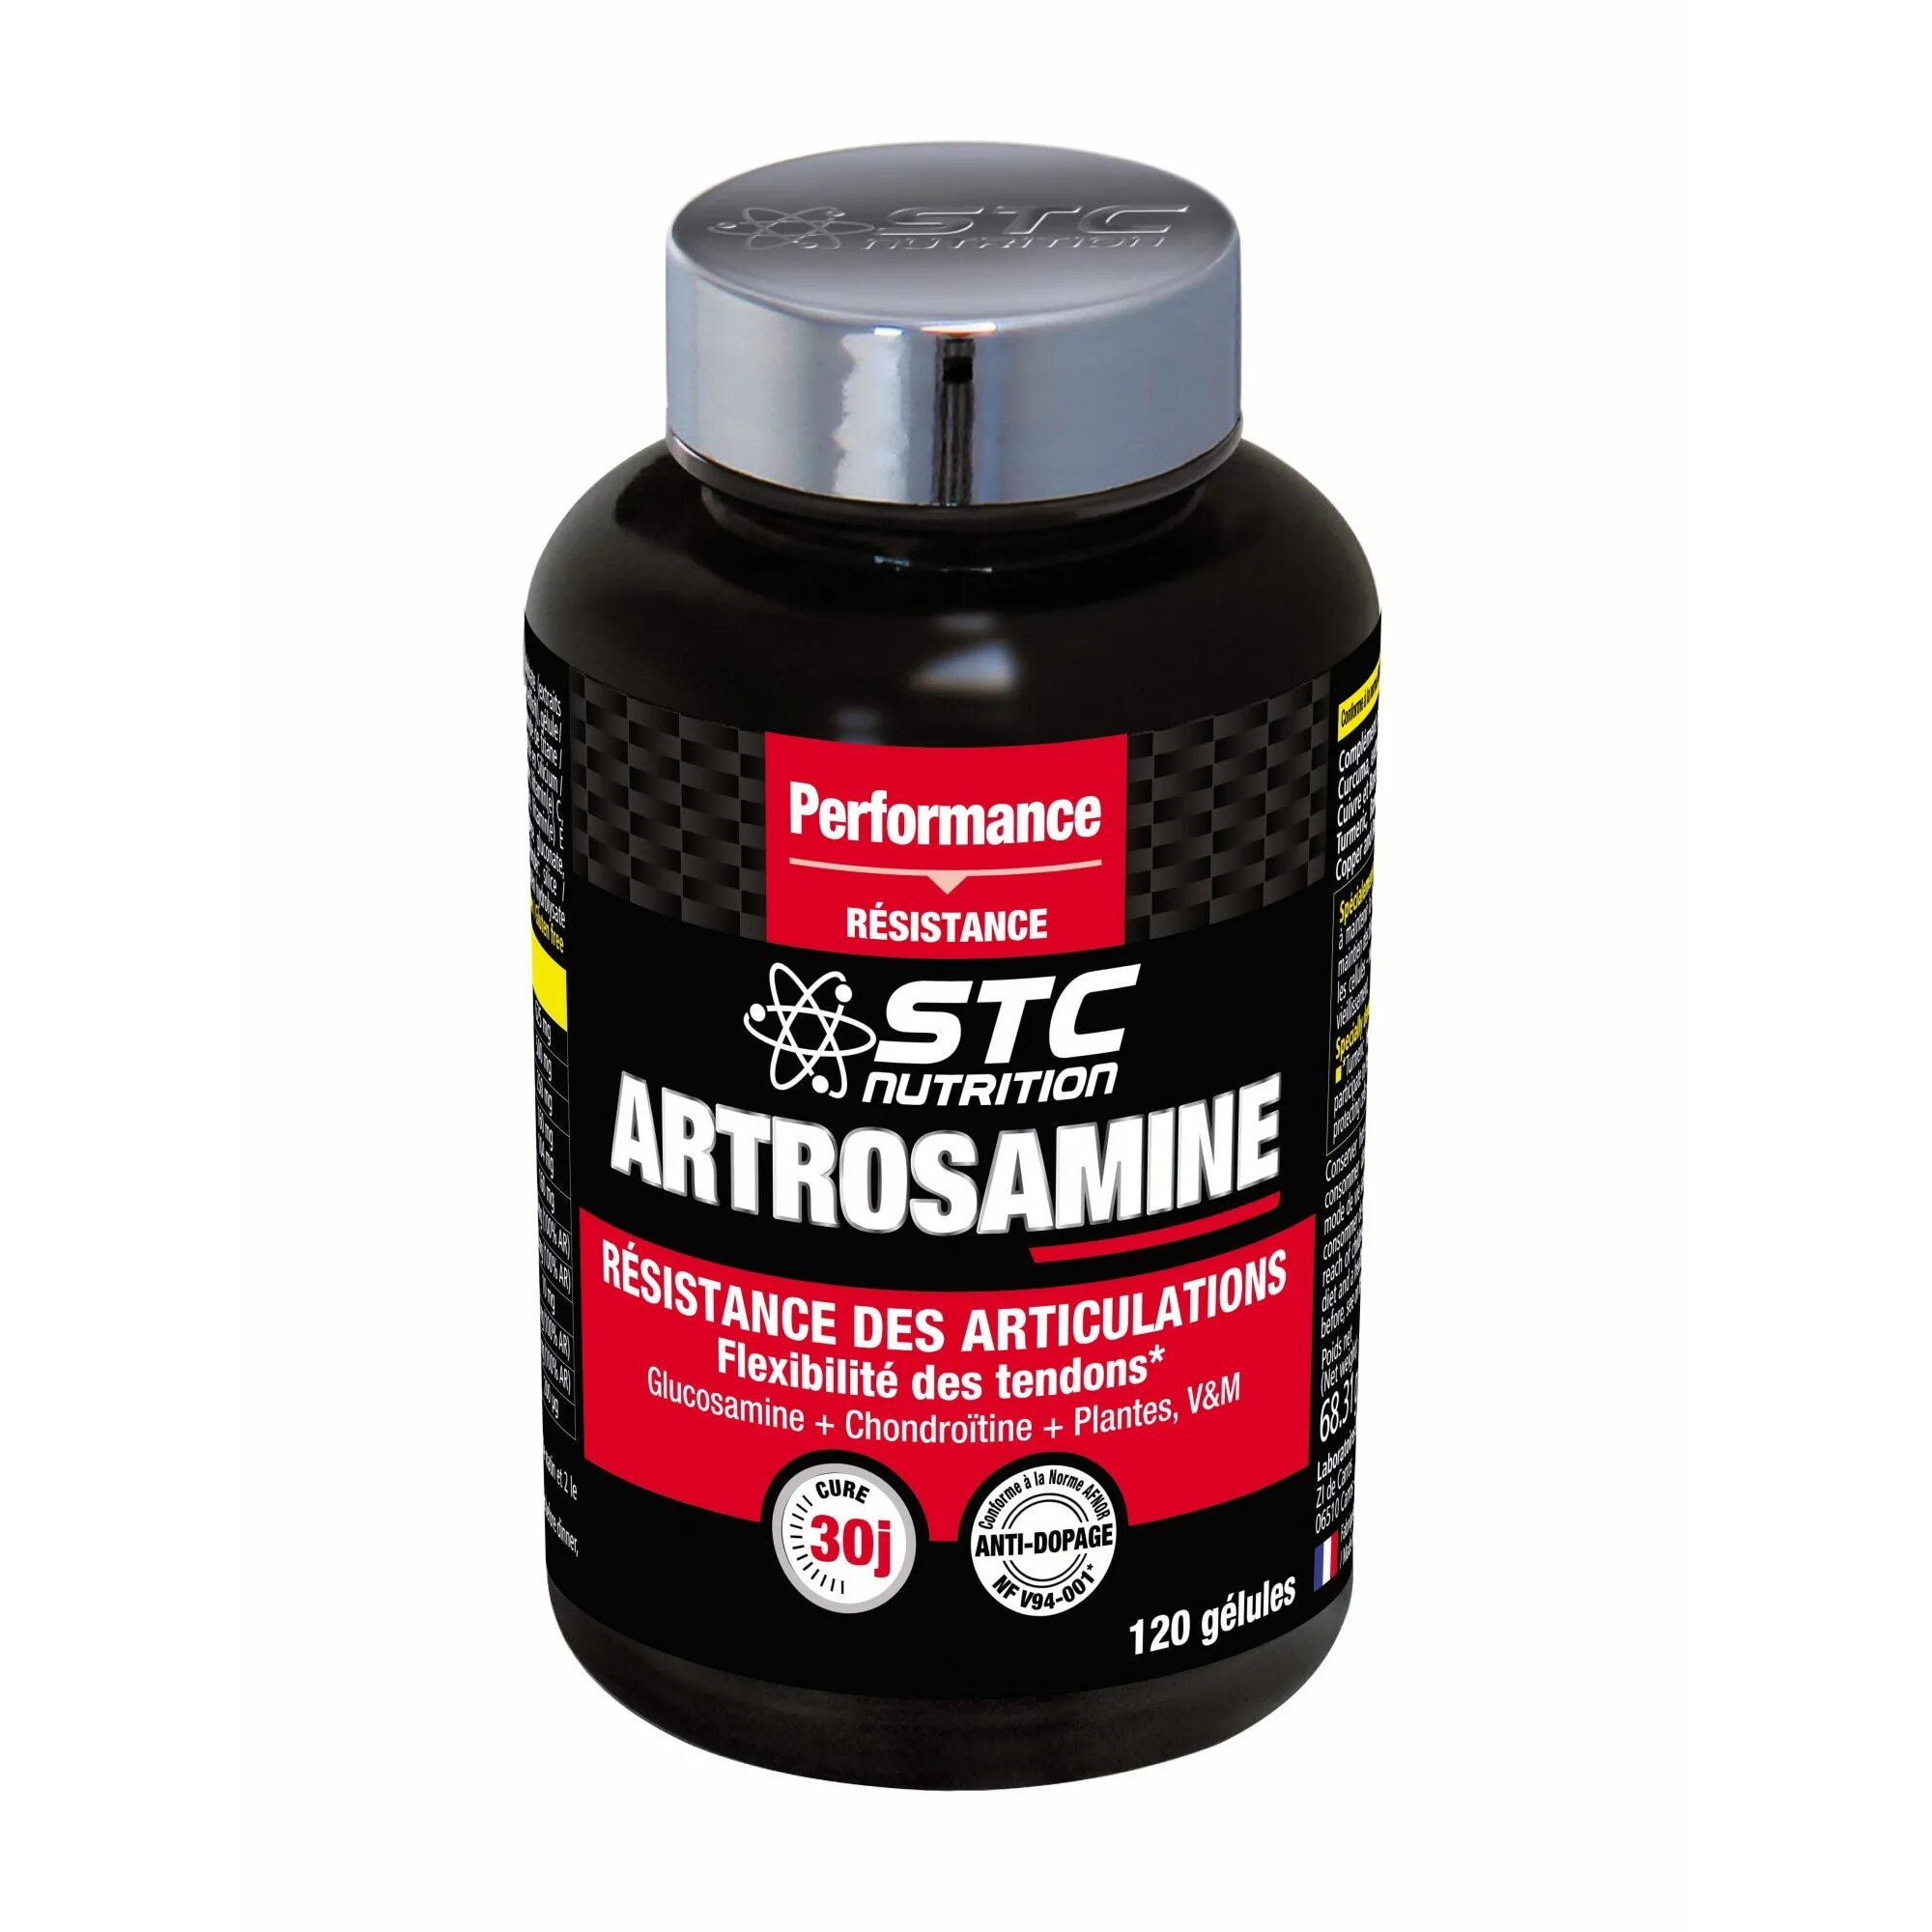 Performance 20. Артрозамин капсулы. ARTROSAMINE инструкция. Артрозамин плюс порошок-концентрат. STC Nutrition талия пресс плоский живот, 120 капсул.